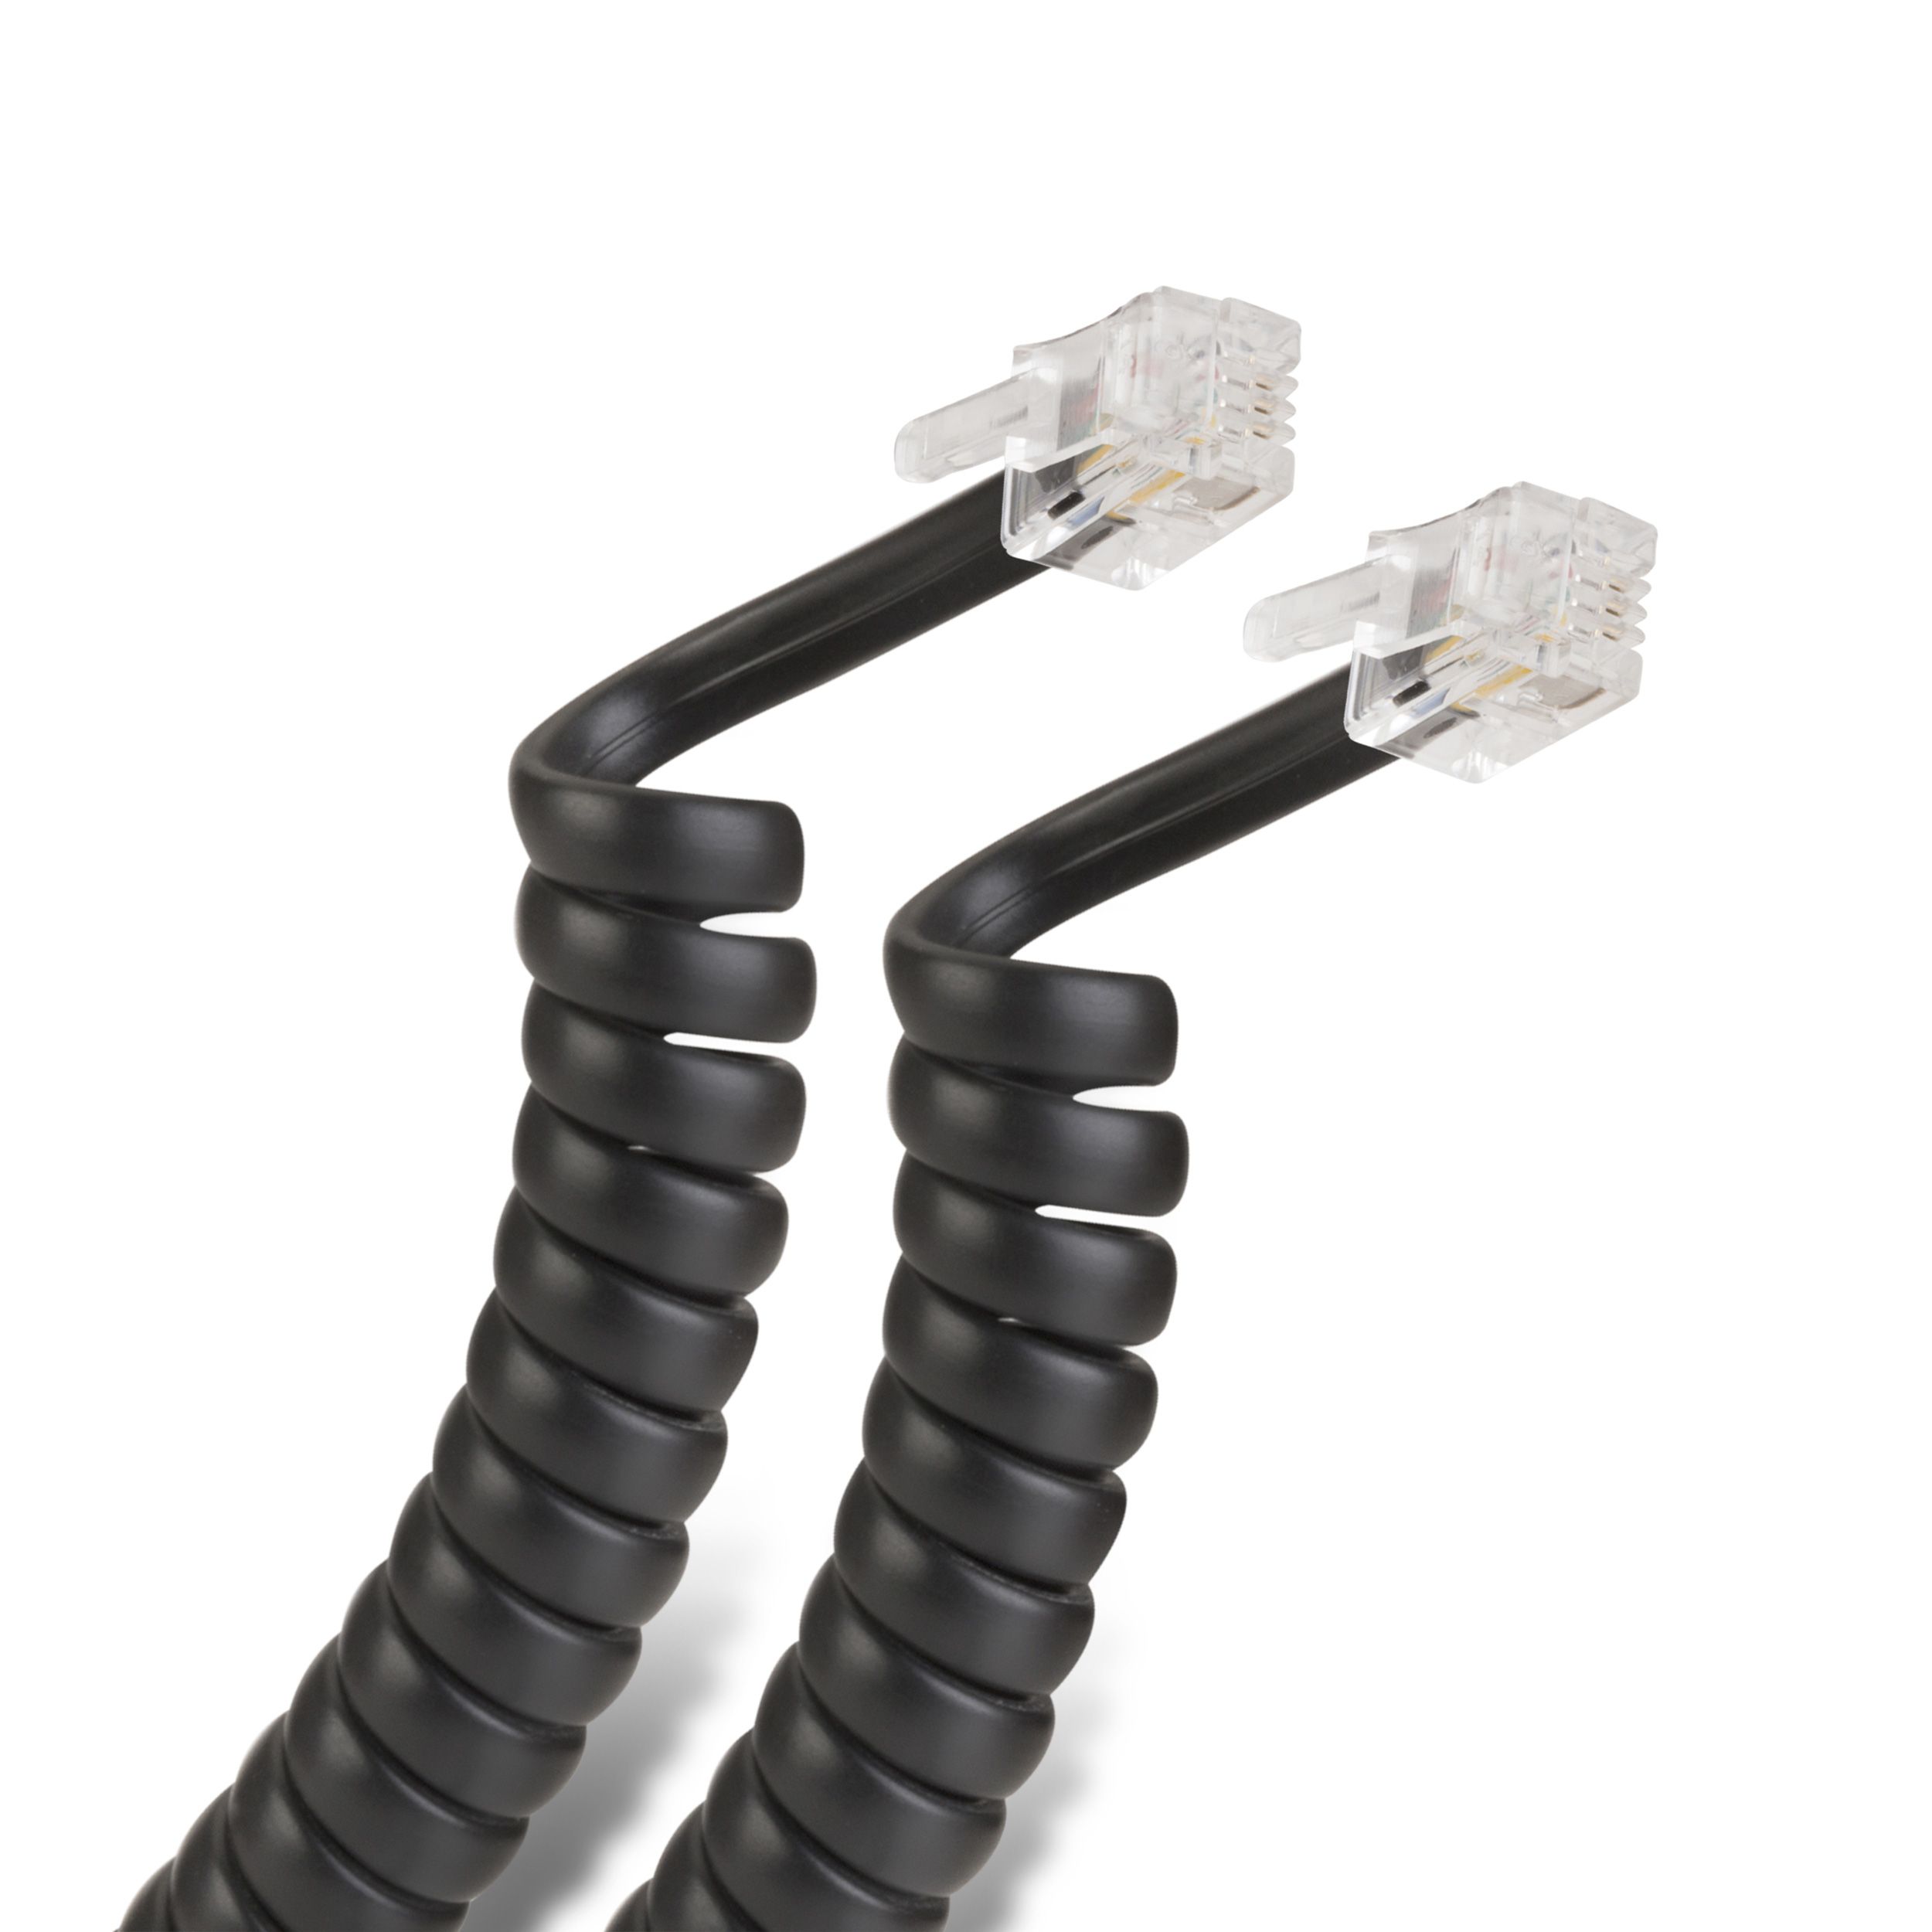 4m cable de teléfono cable modular rj10 4 polos teléfono cuerda con espiral extensible 